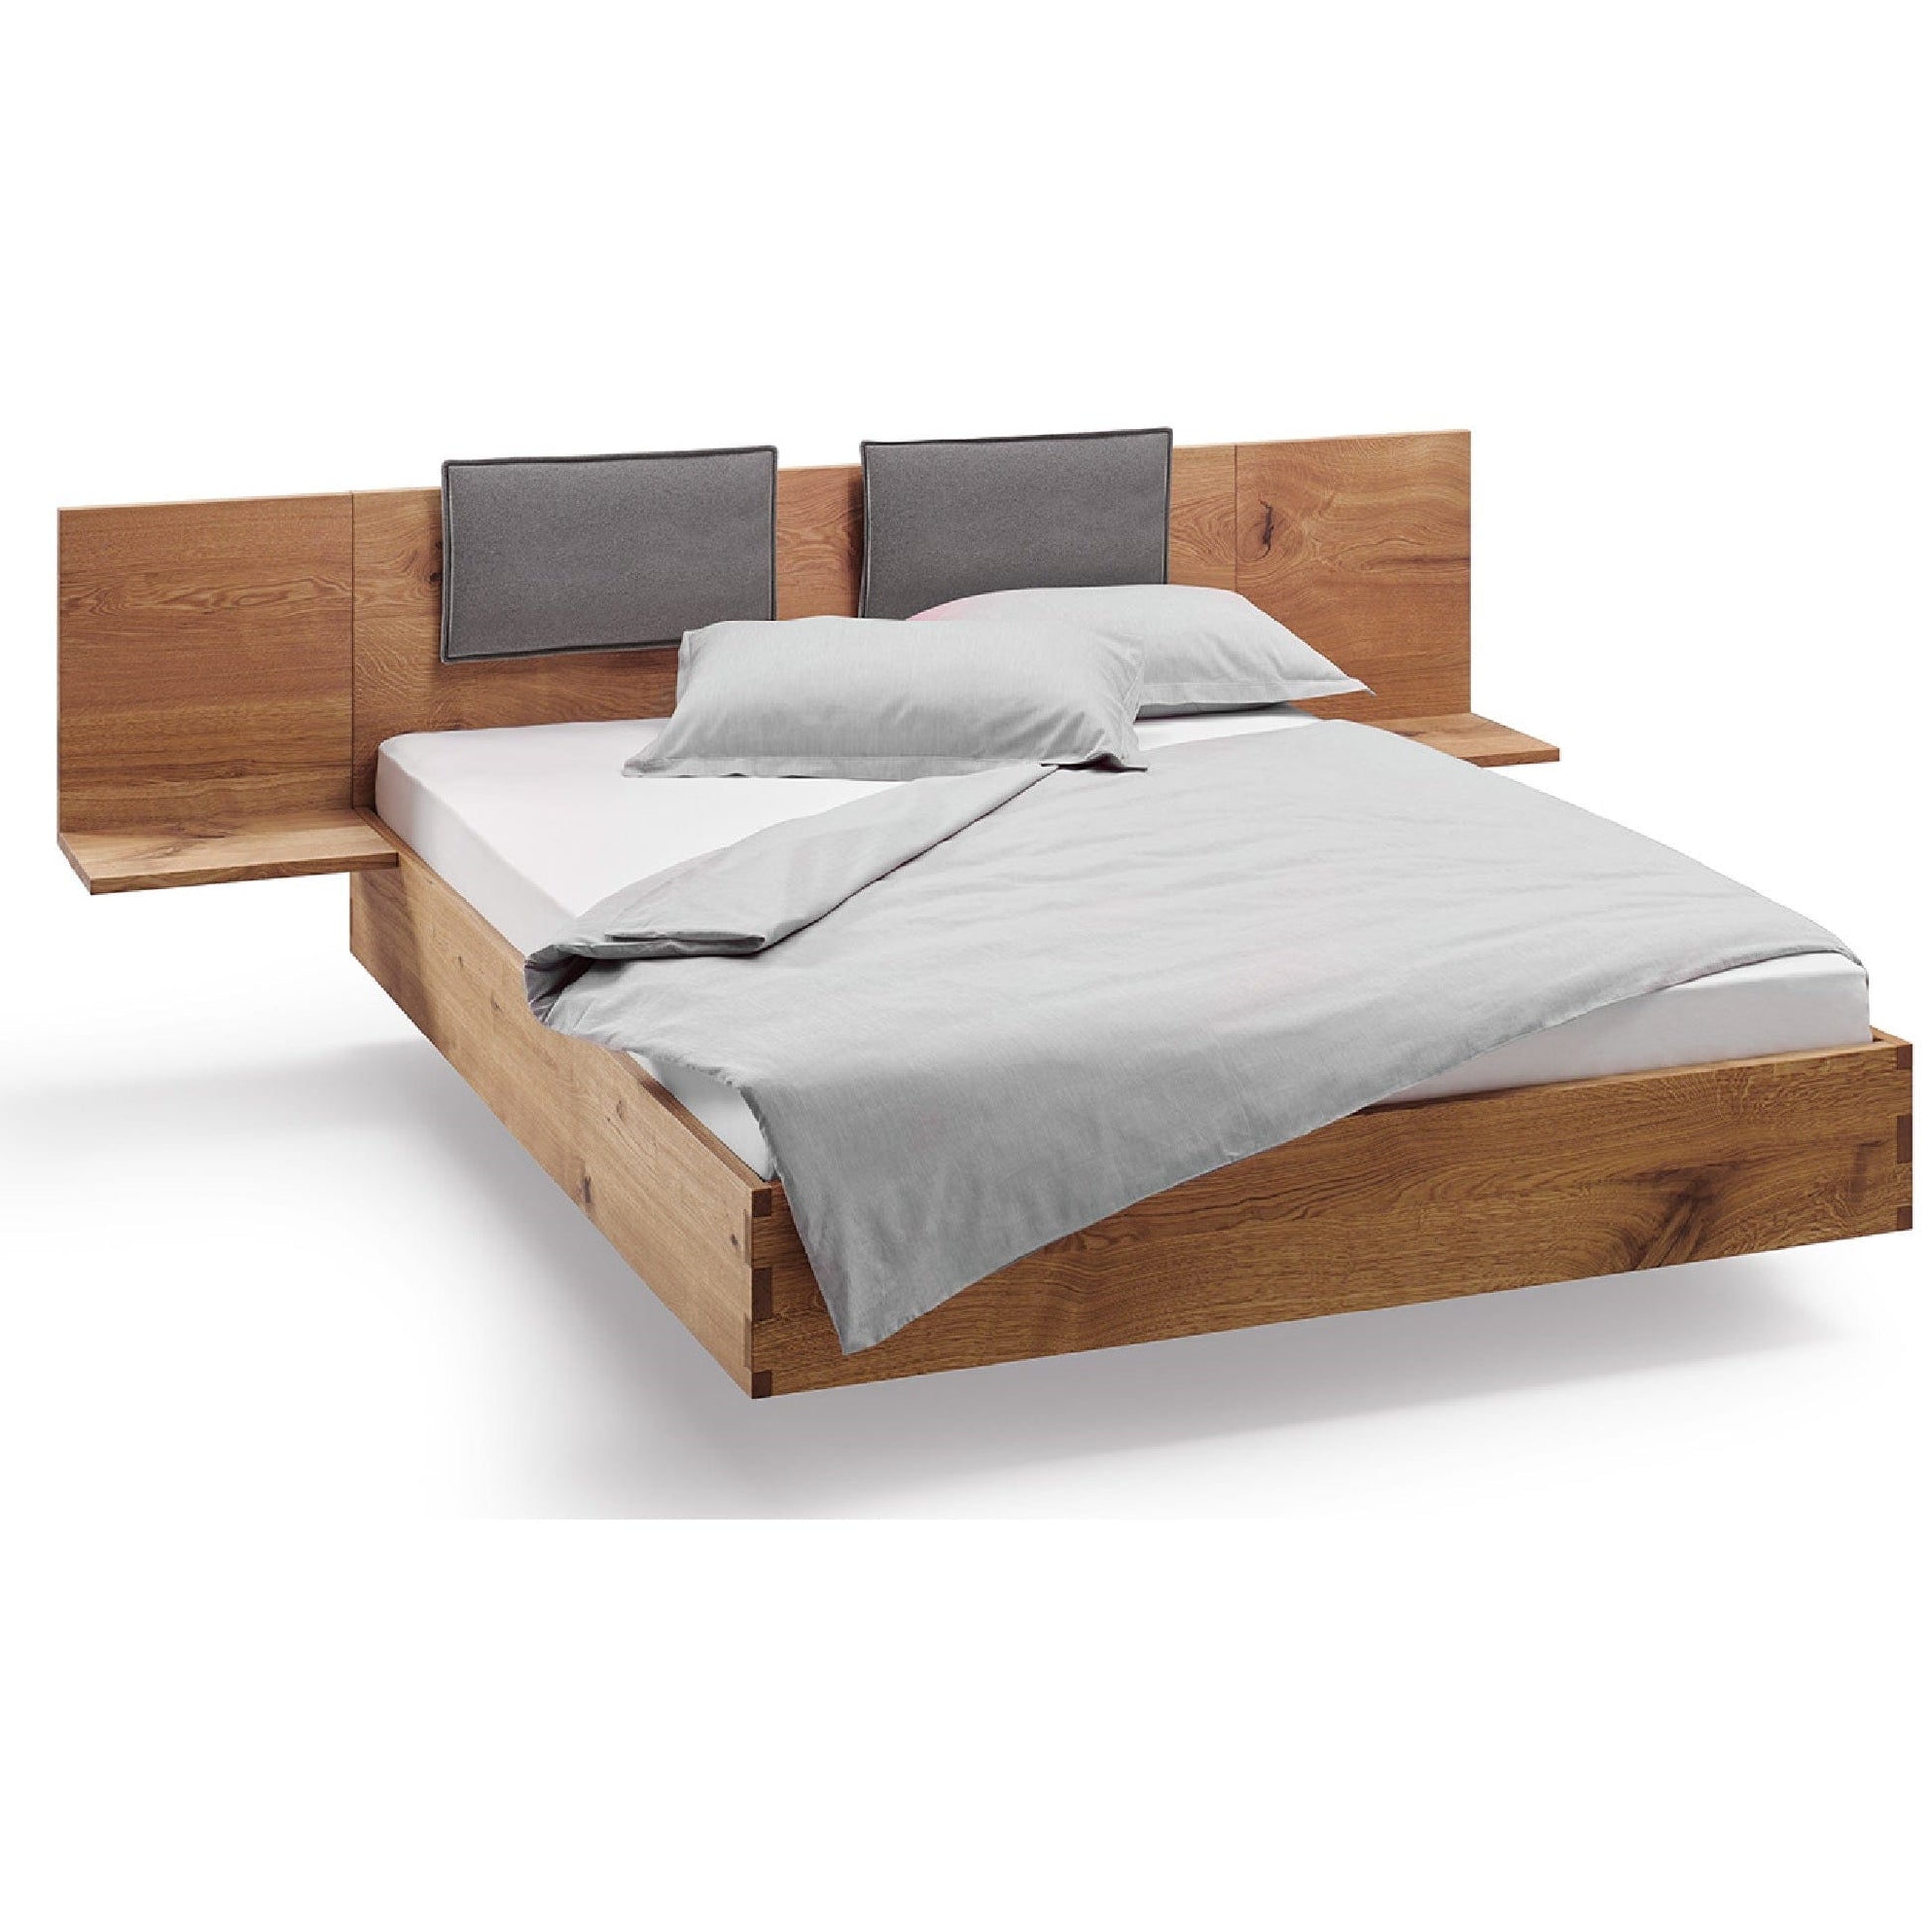 Holzmanufaktur Bett NAP aus Massivholz Wildeiche gebürstet mit hoher Rückenlehne